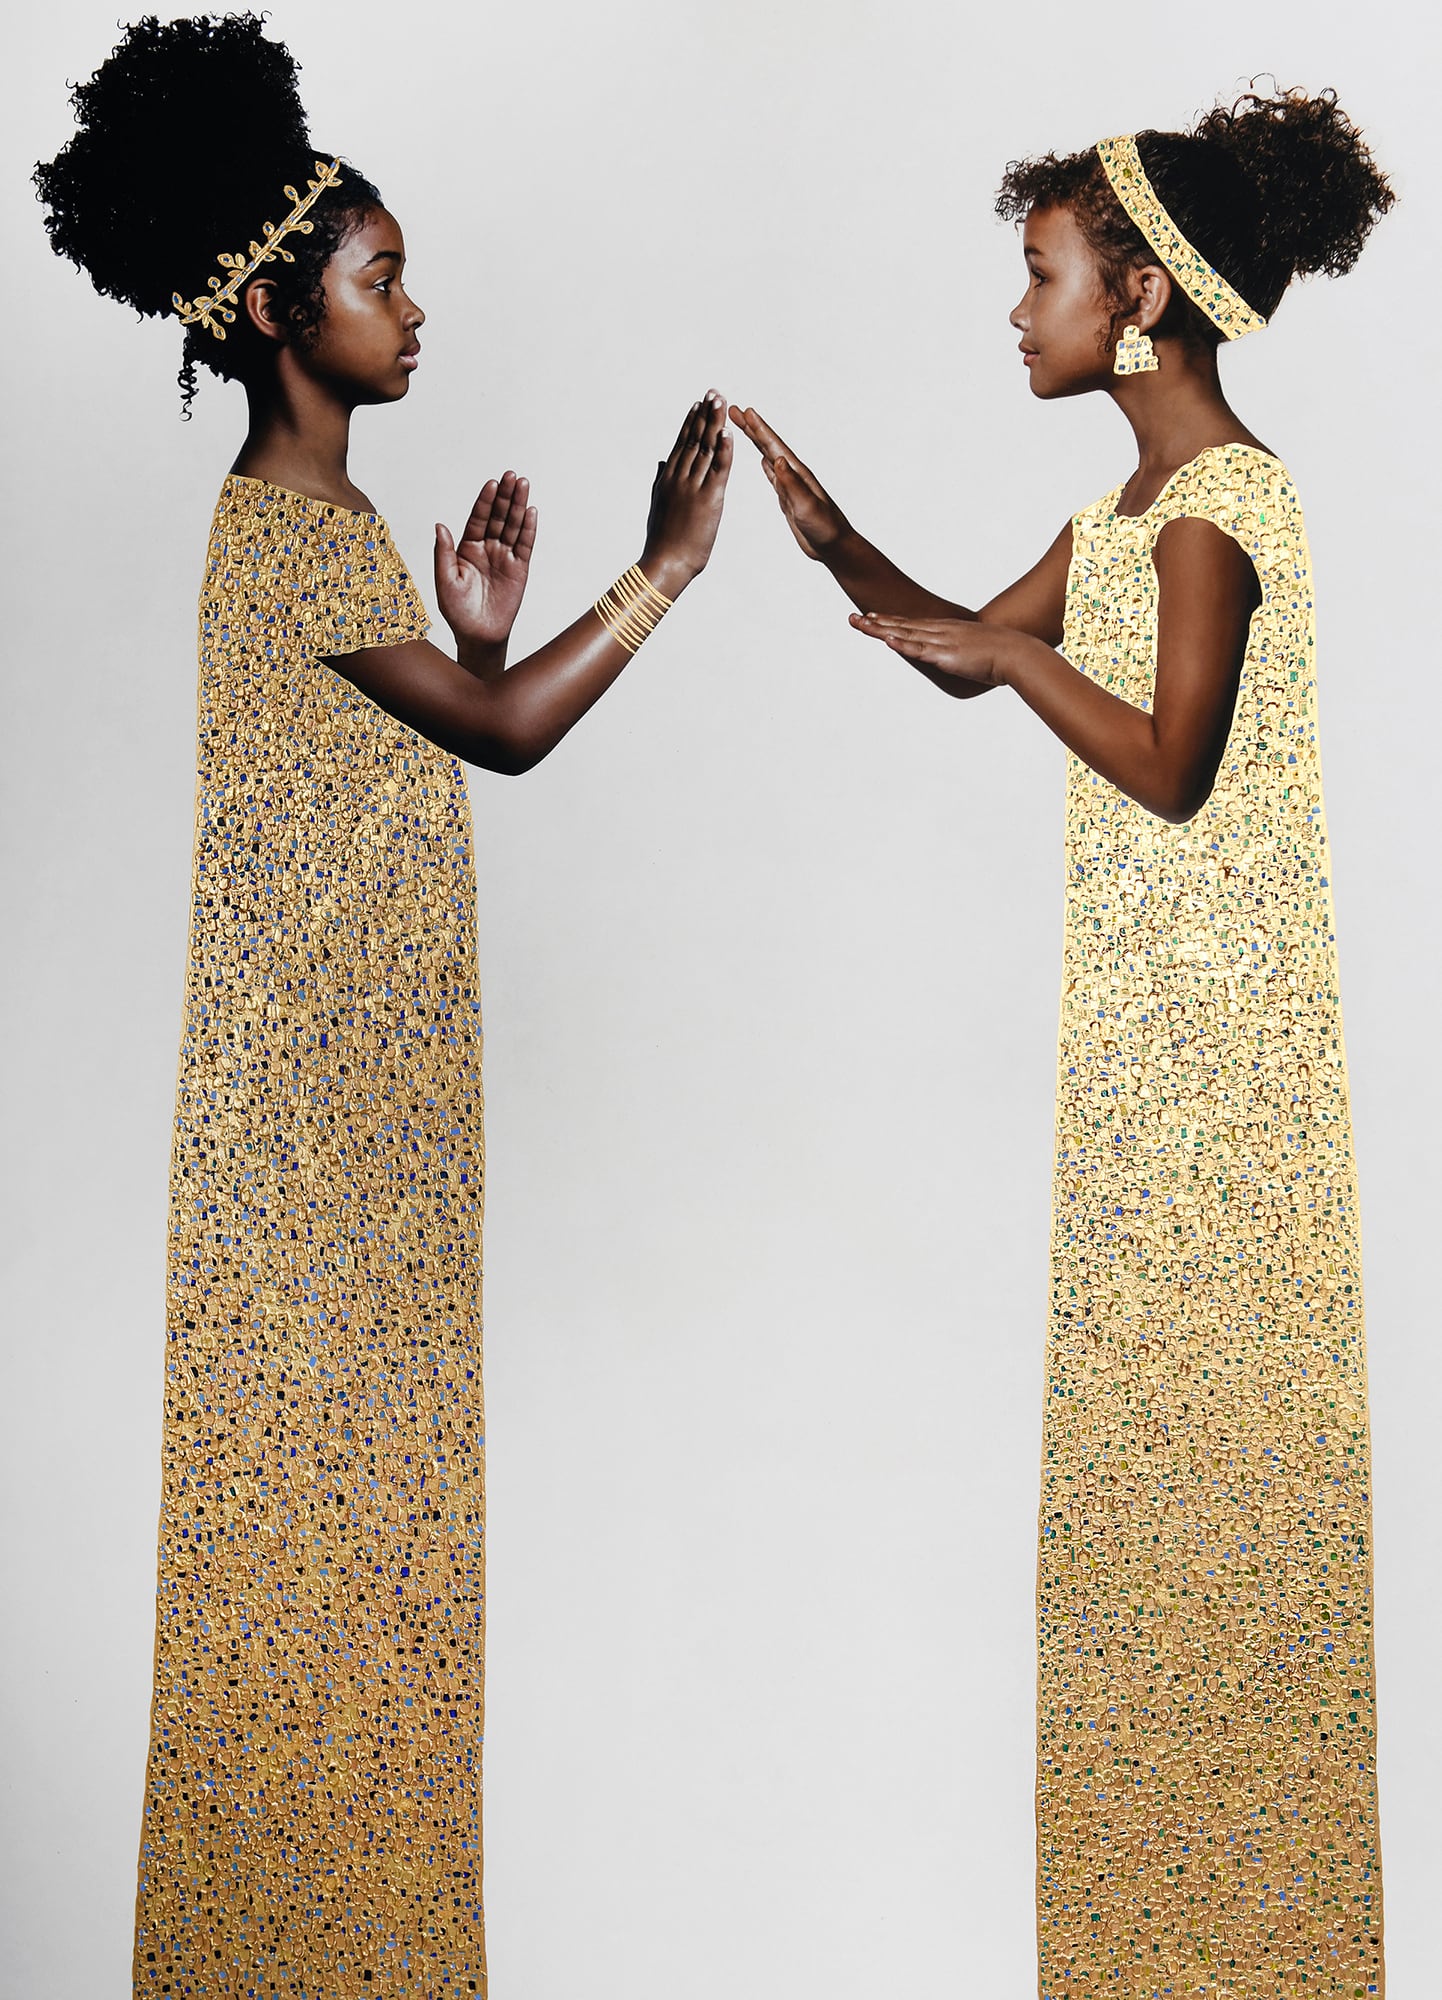 dos niñas negras jugando con vestidos de oro estilo klimt fotografia de tawny chatmon